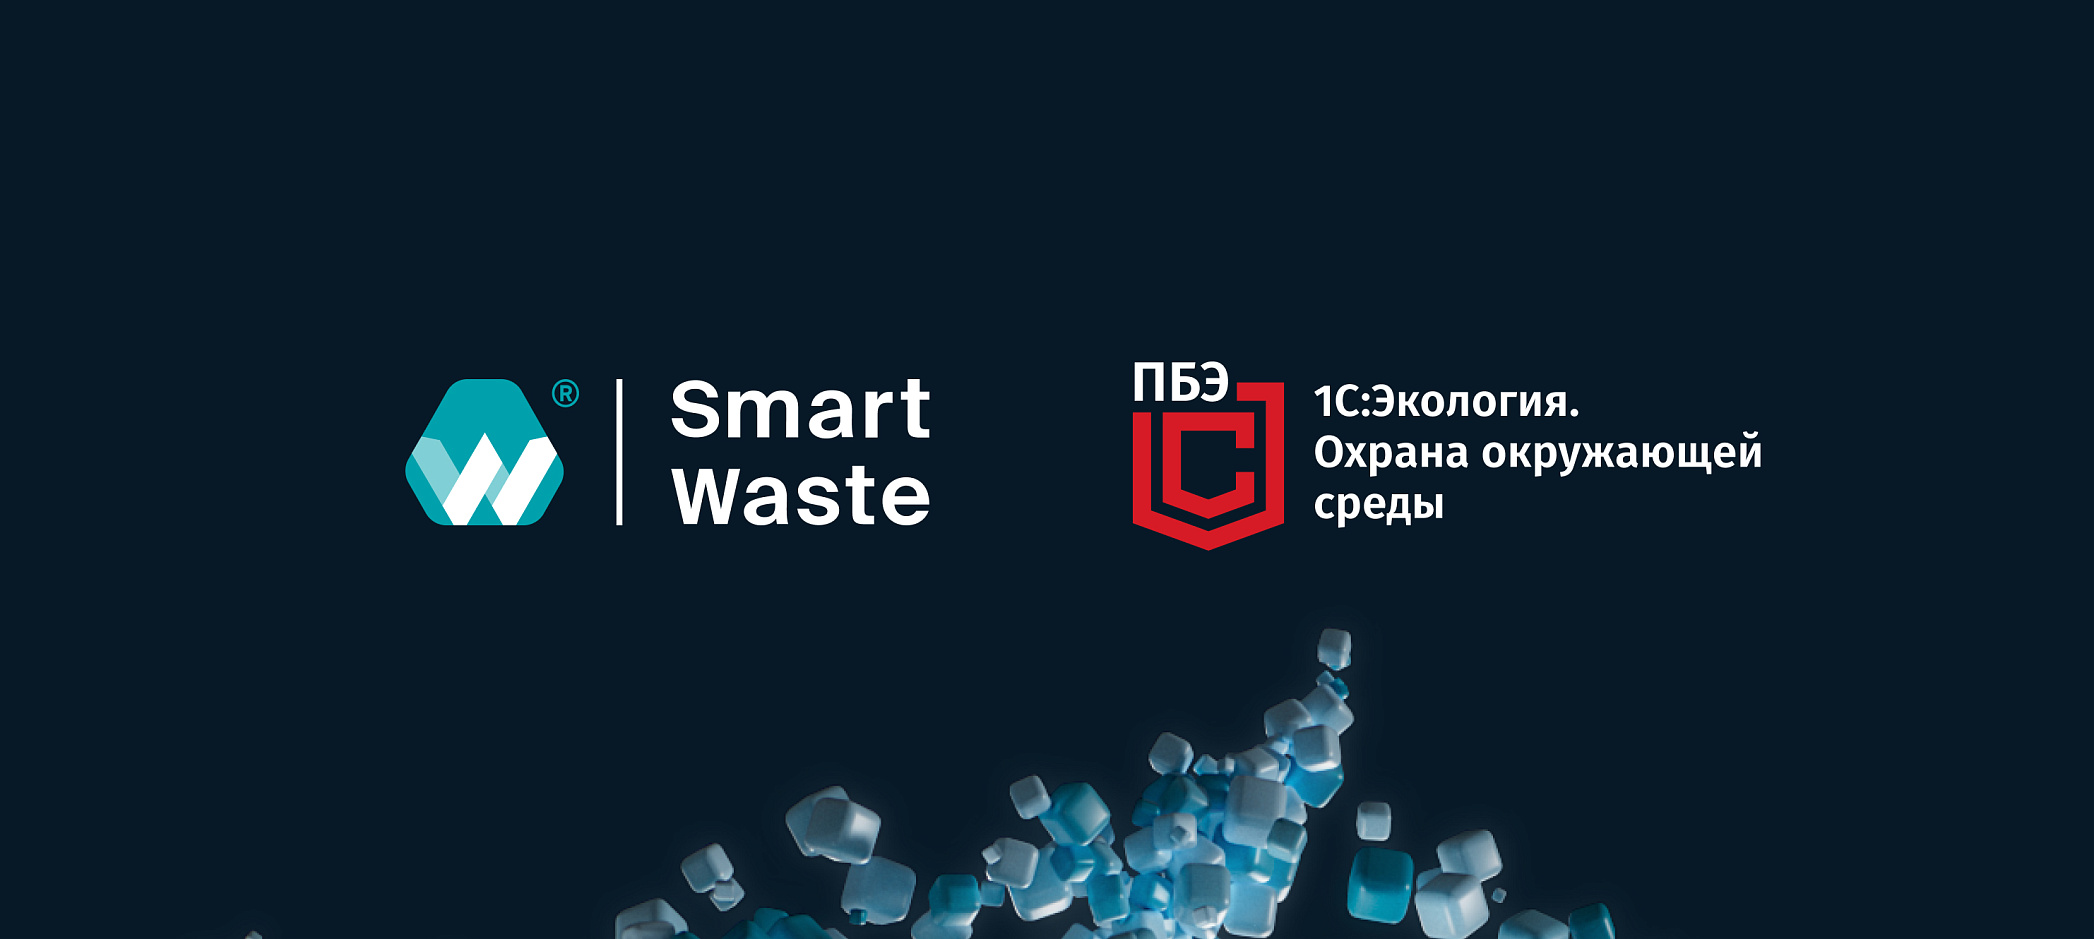 Smart Waste и 1С: Экология.Охрана окружающей среды Корп объявили о начале сотрудничества